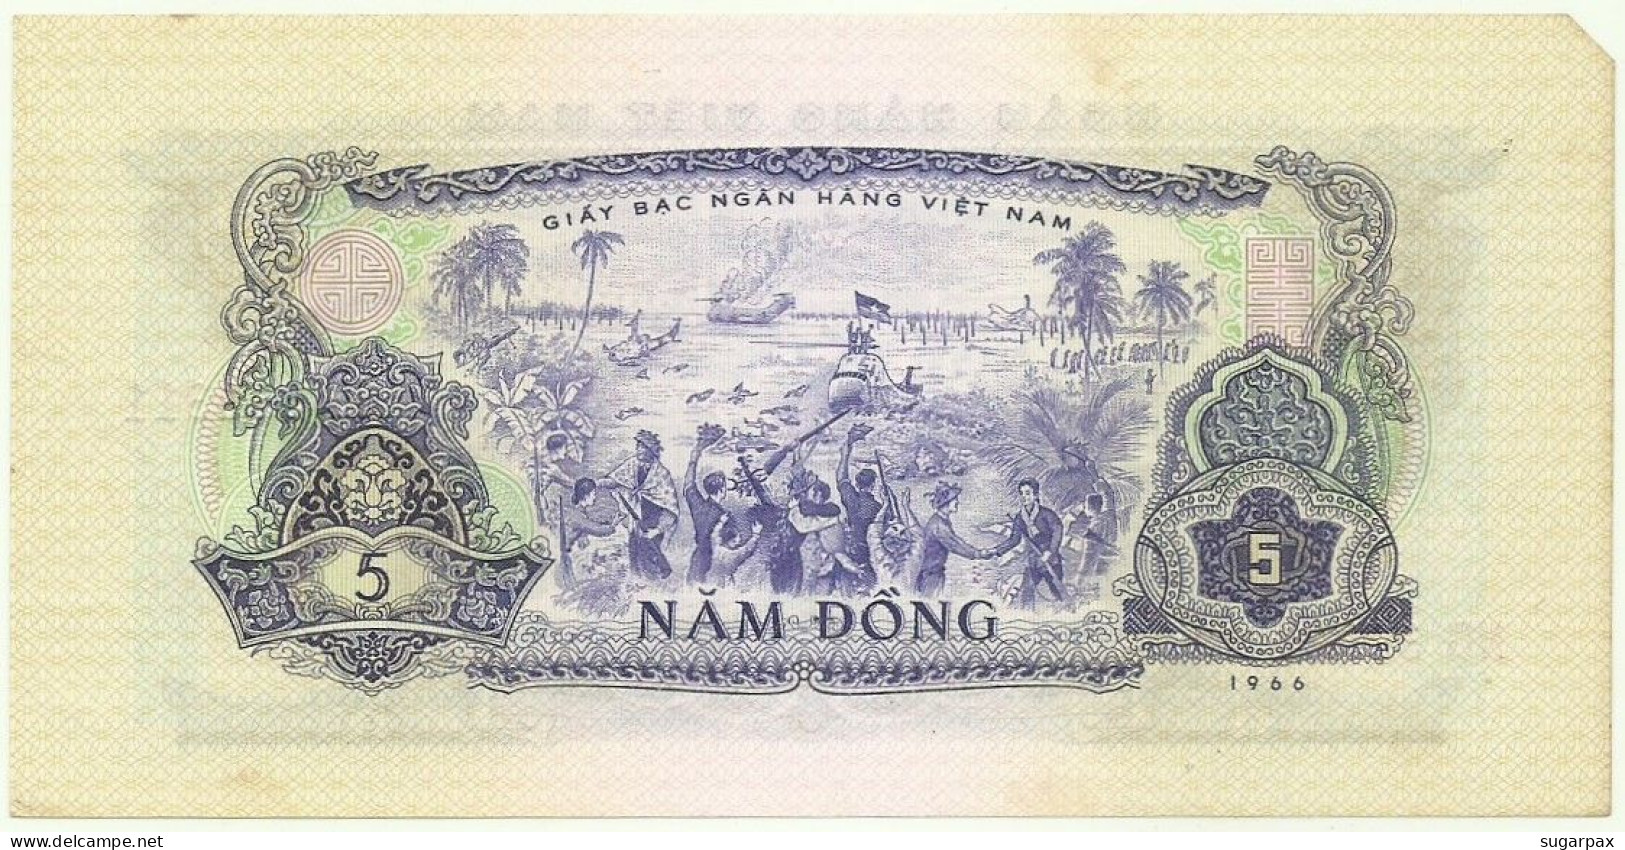 SOUTH VIET NAM - 5 Dông - 1966 ( 1975 ) - P 42 - Serie NG - VIETNAM - Viêt-Nam